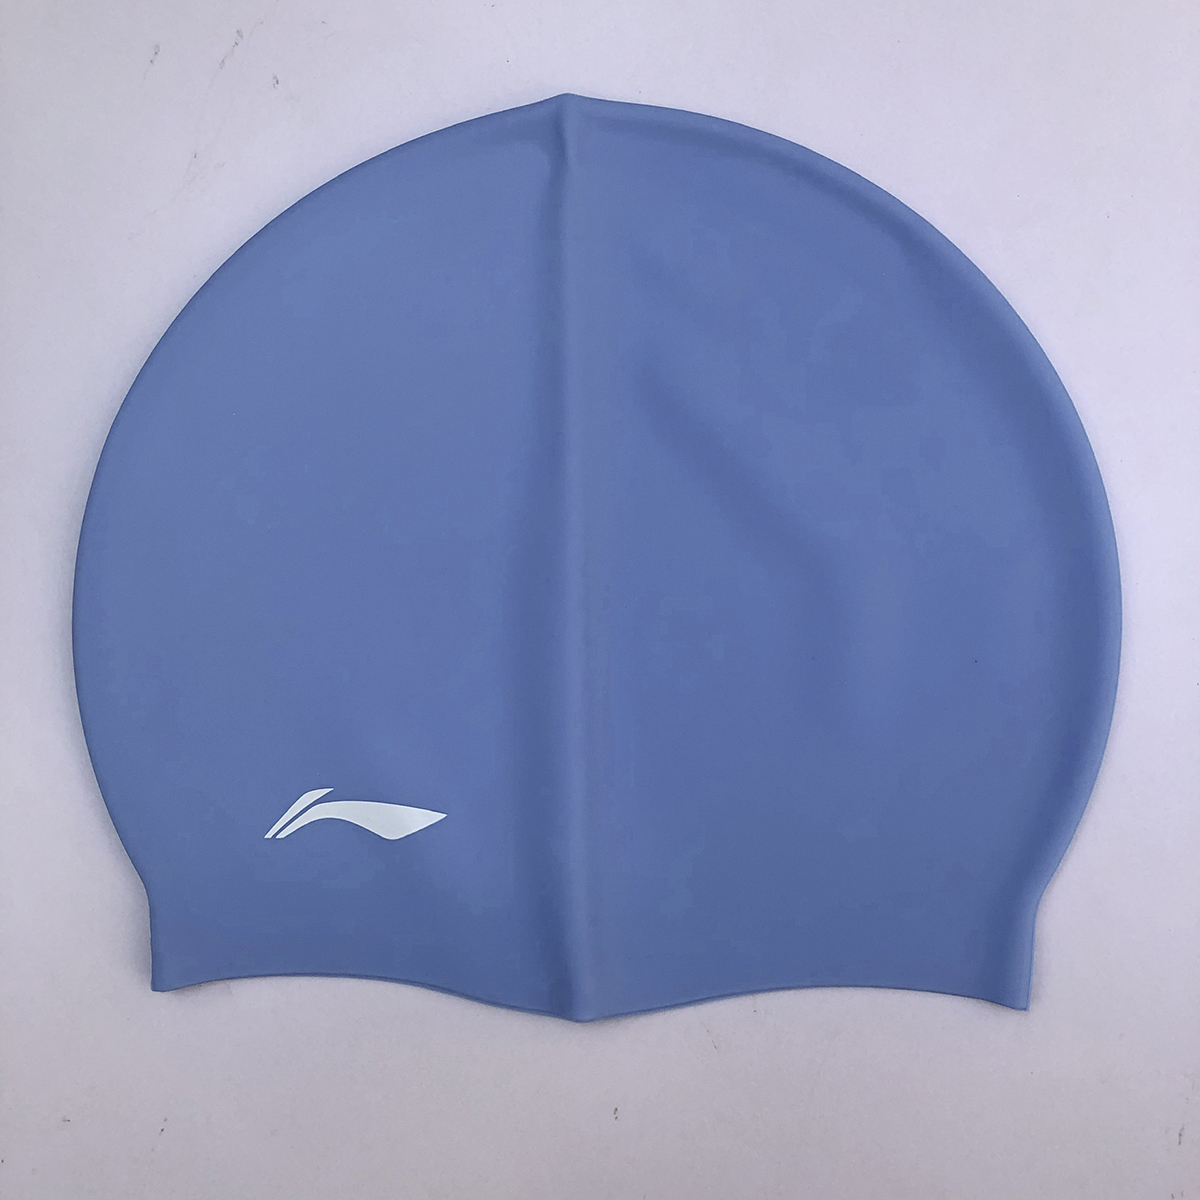 Bộ Kính bơi người lớn LI-NING chống tia UV chống sương mù kèm nút bịt tai (Xanh Trắng) và Nón bơi LI-NING (Xanh dương) - Hàng chính hãng